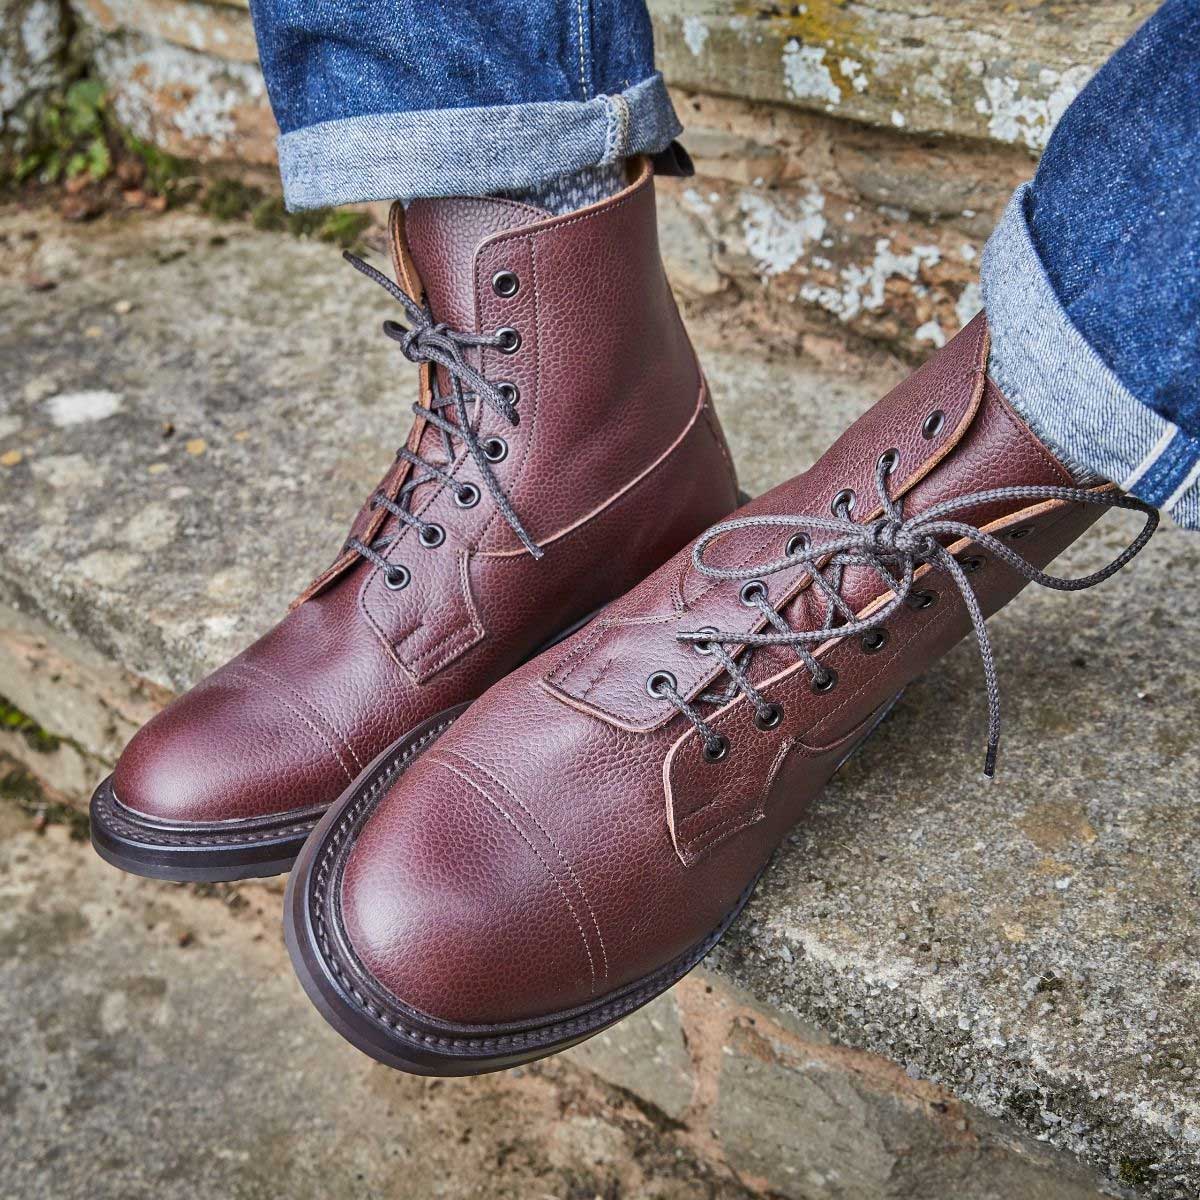 Tricker's Grassmere Country Boots - Commando Sole